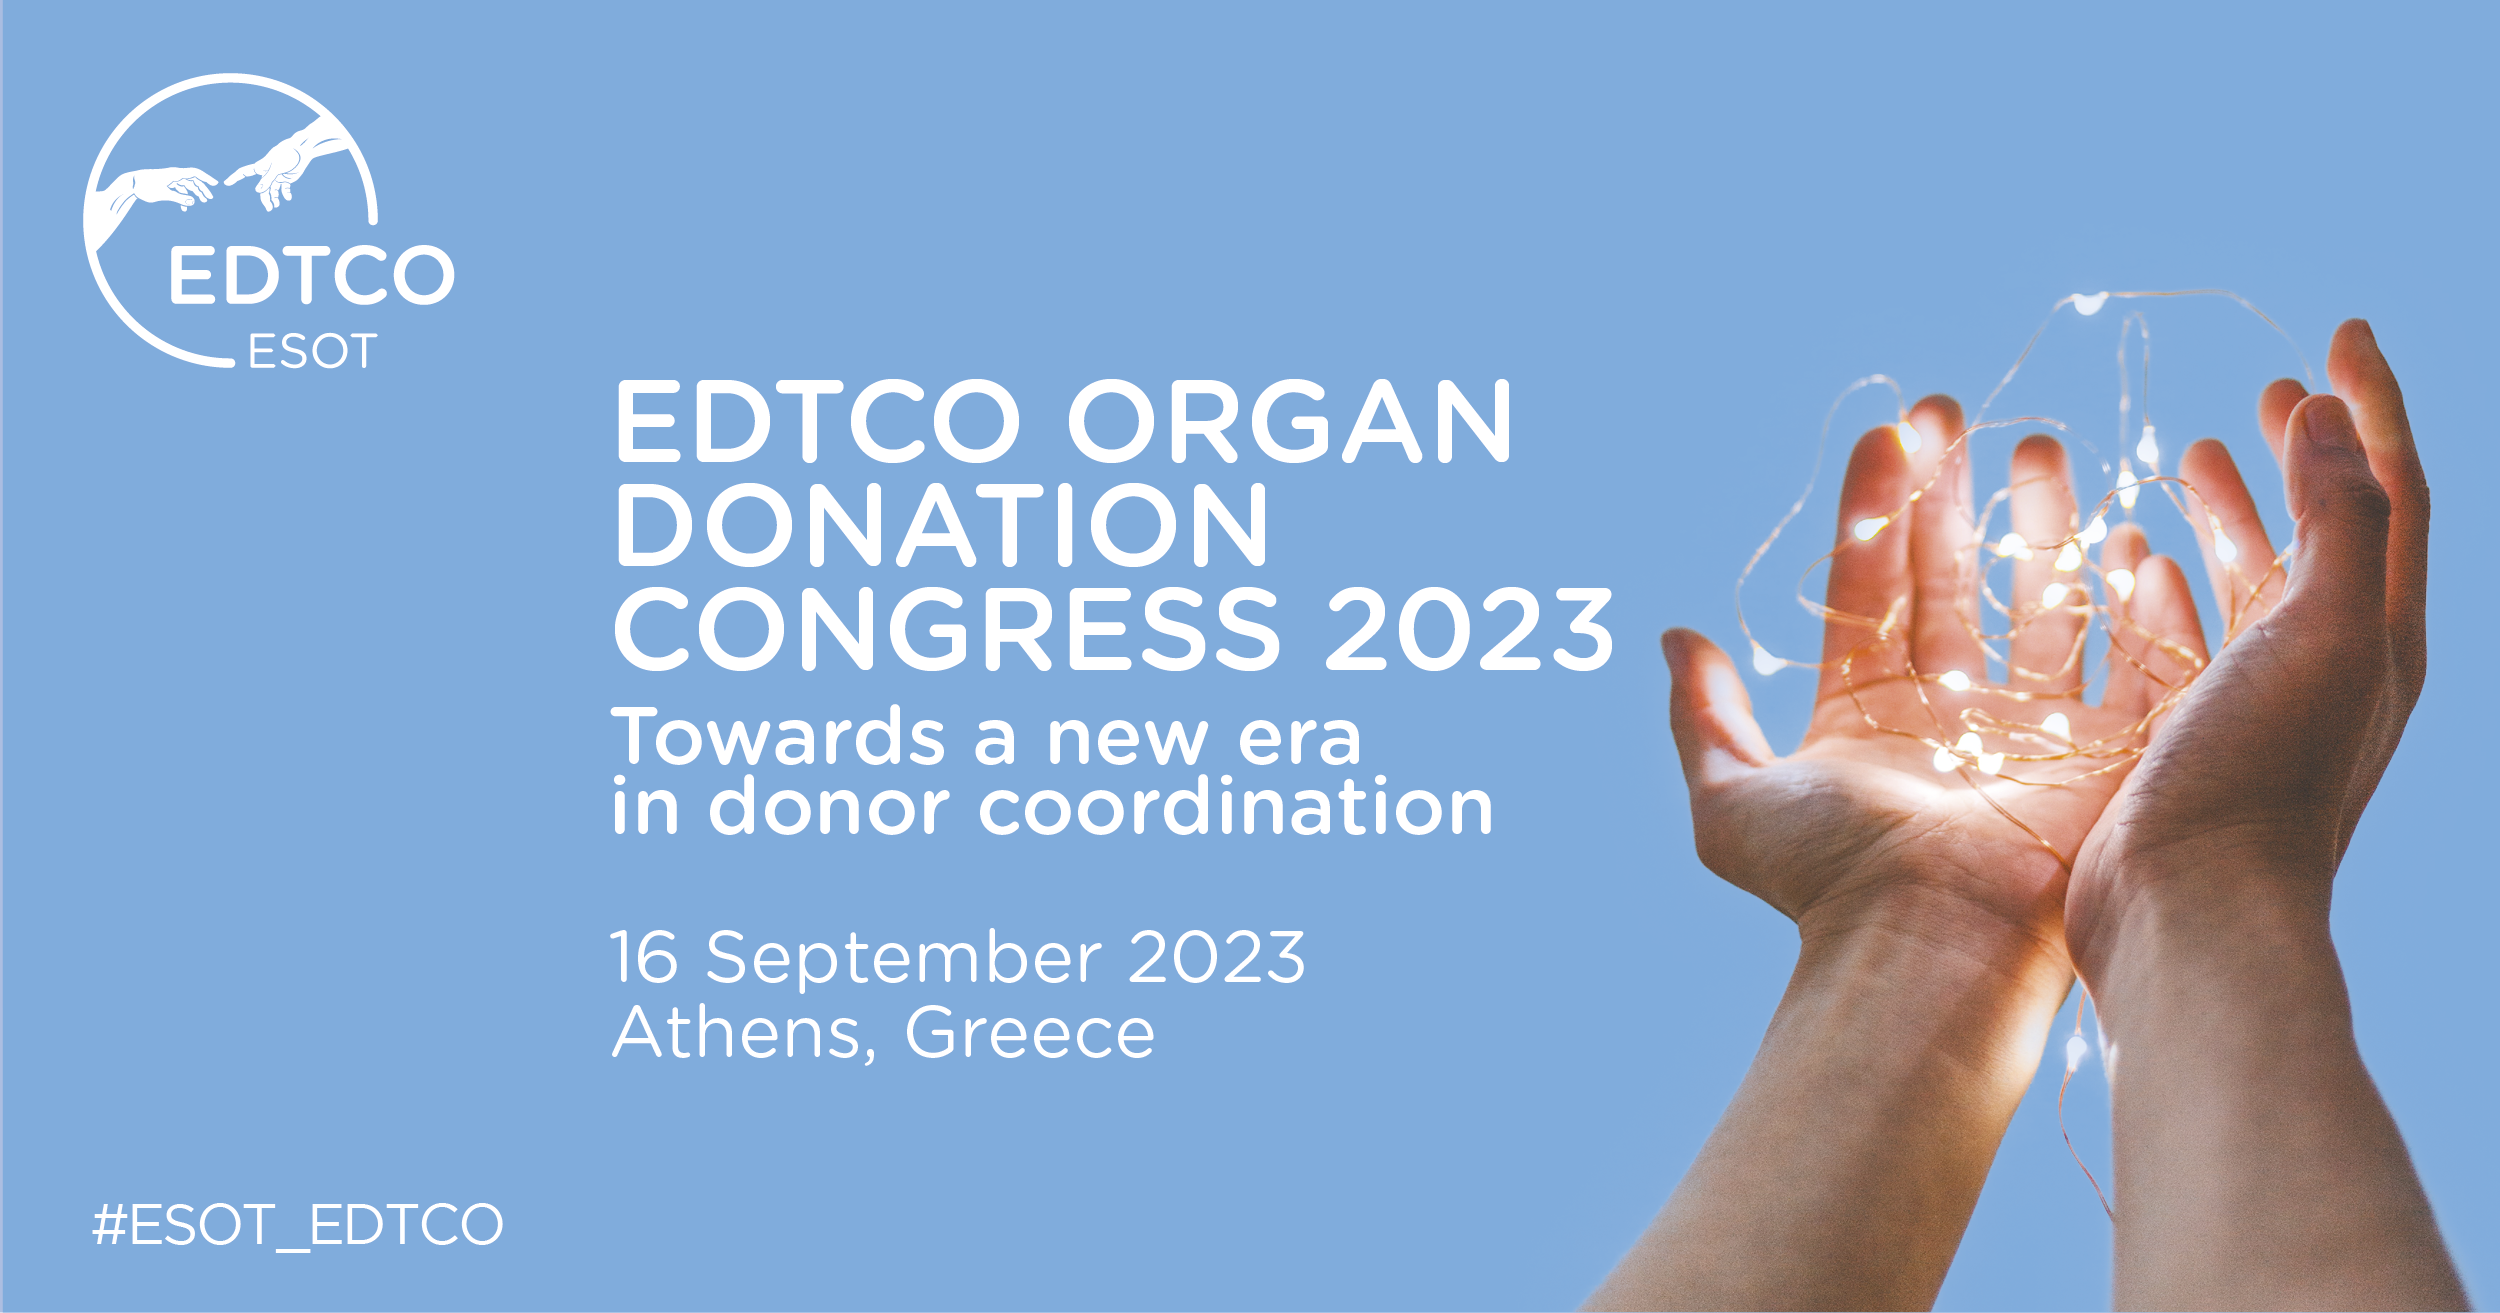 EDTCO Organ Donation Congress 2023 – Athens, 16 September 2023